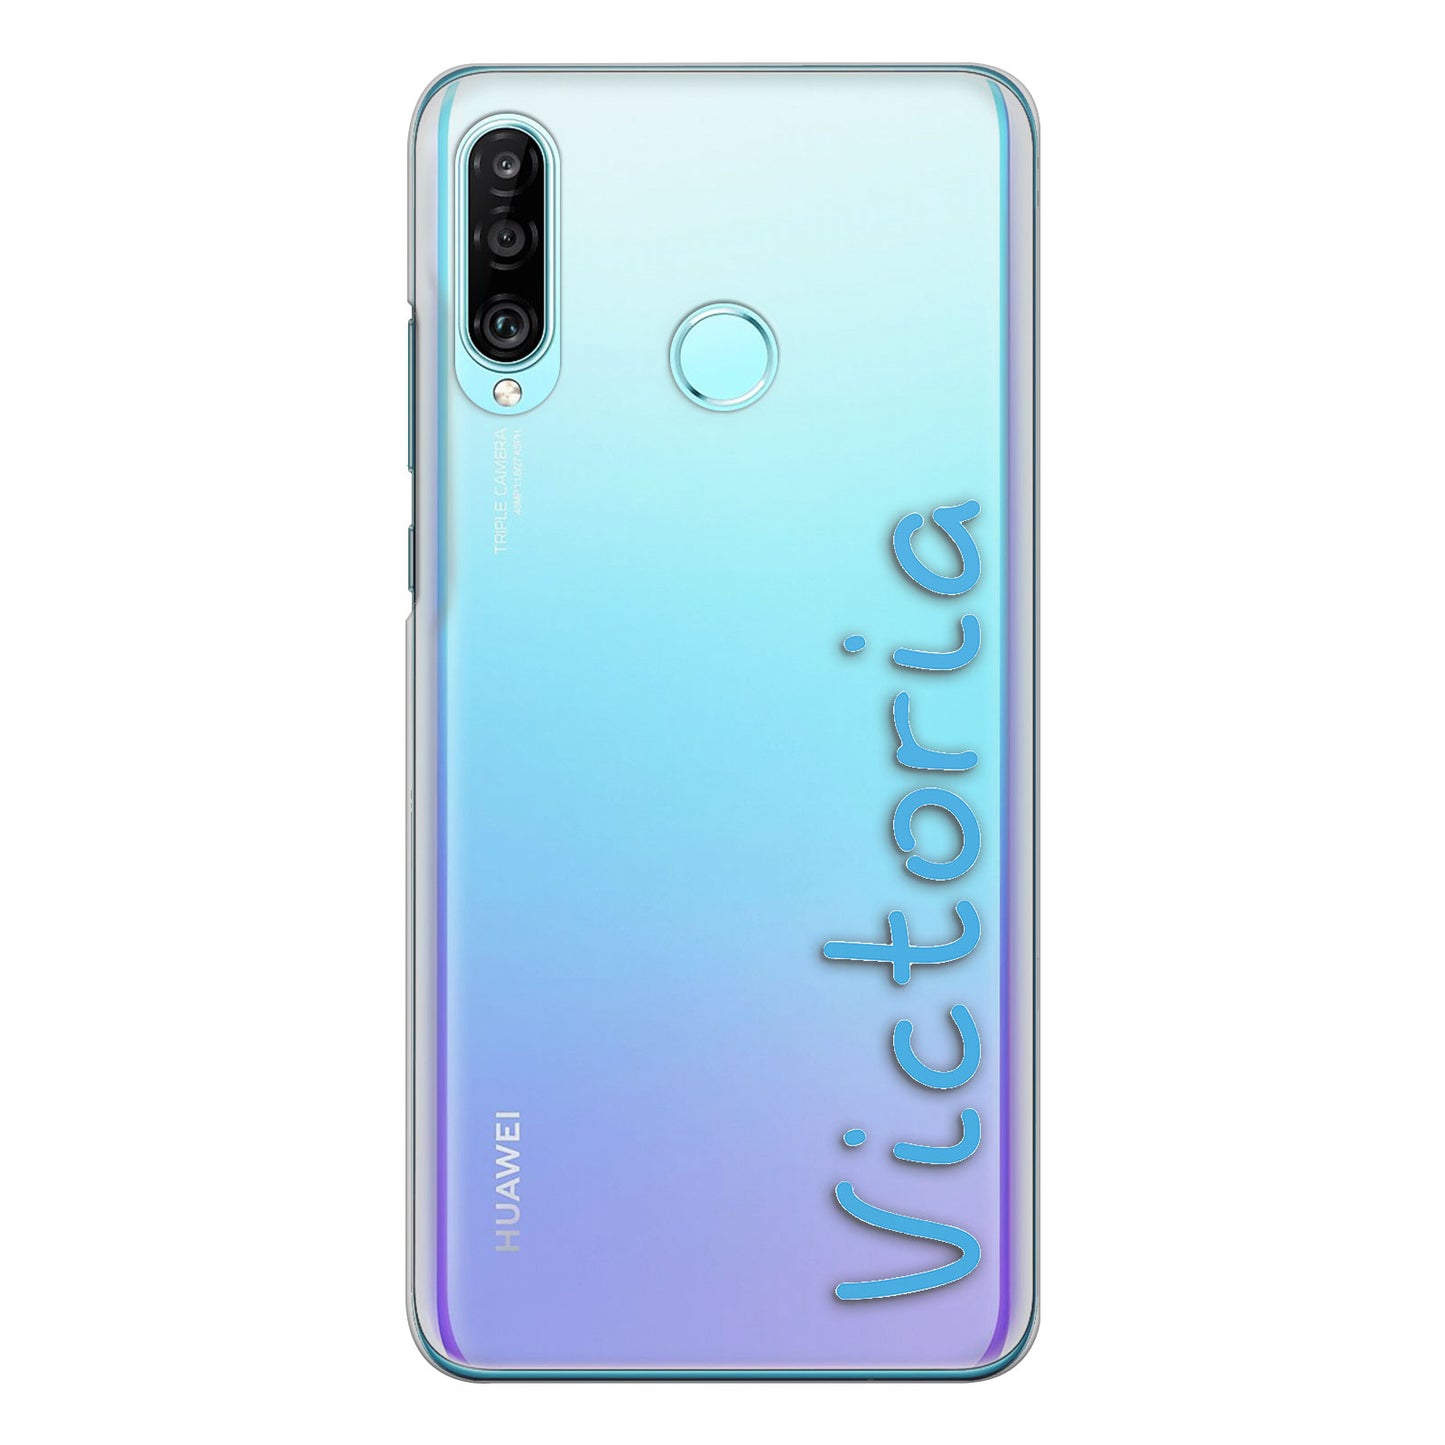 Personalisierte Nokia-Handy-Hartschale mit dem Namen „Love Summer“ in Blau